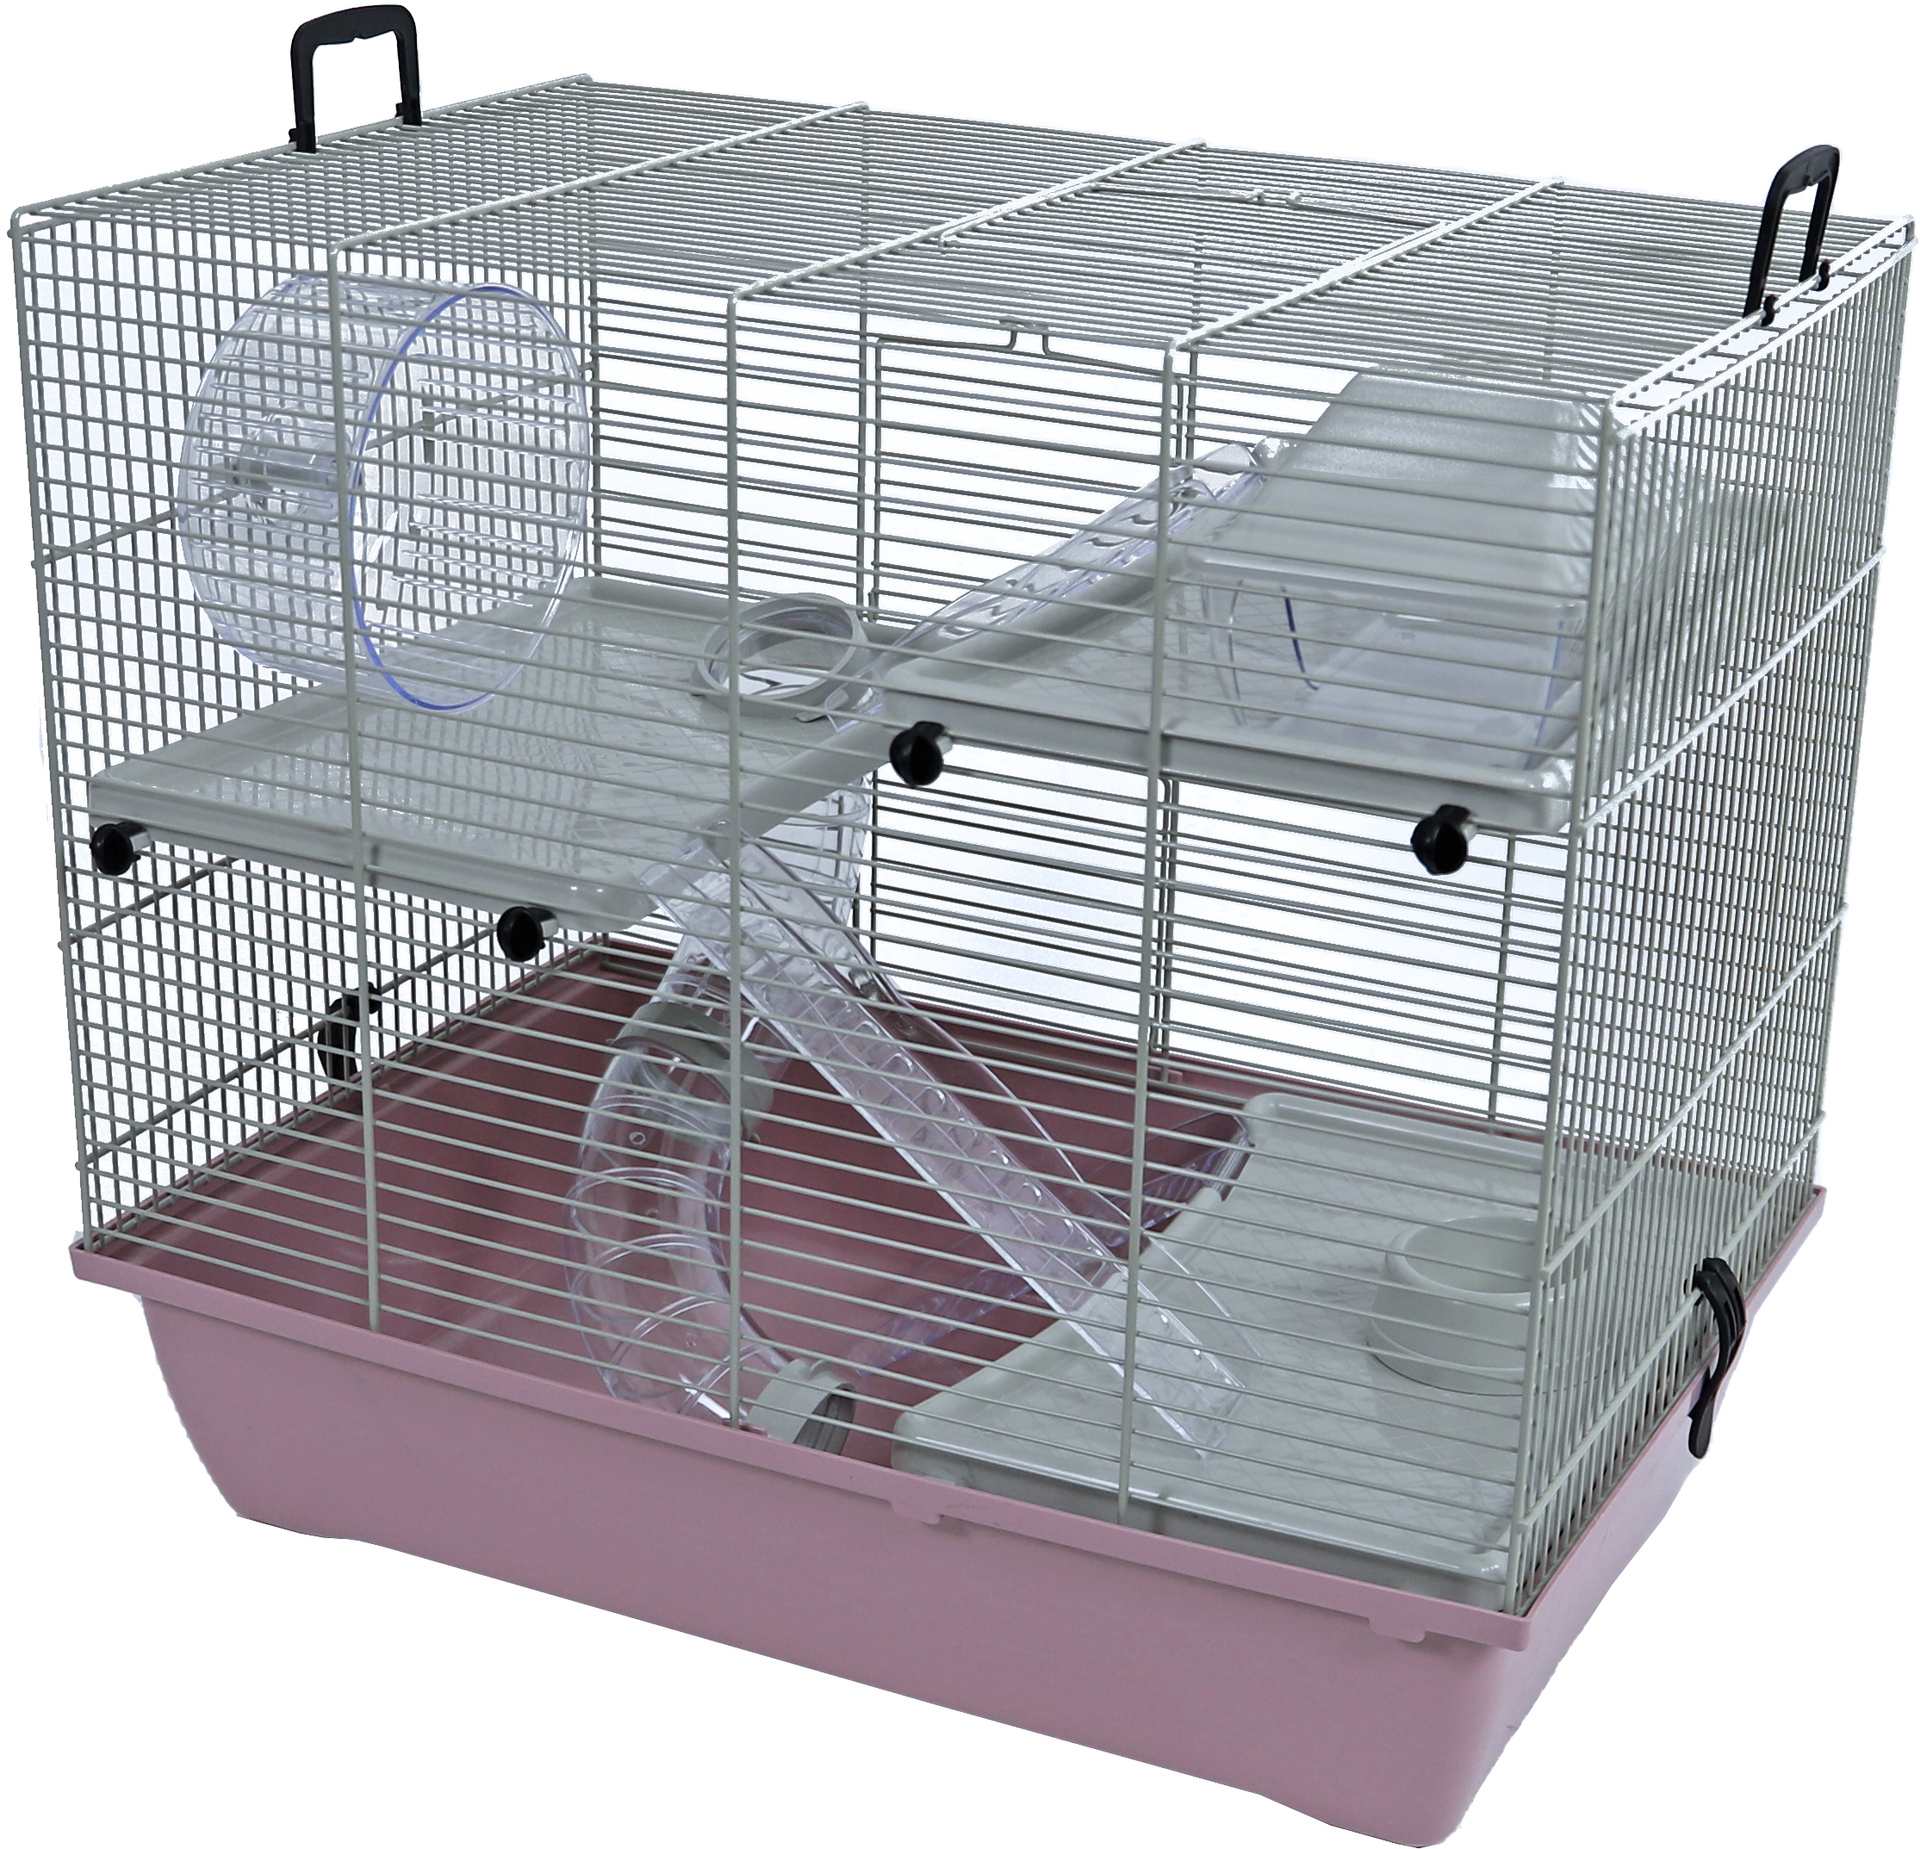 Verbieden Verouderd Politiek Interzoo hamsterkooi Pinky 3, pastel roze - huisdierspecialisten